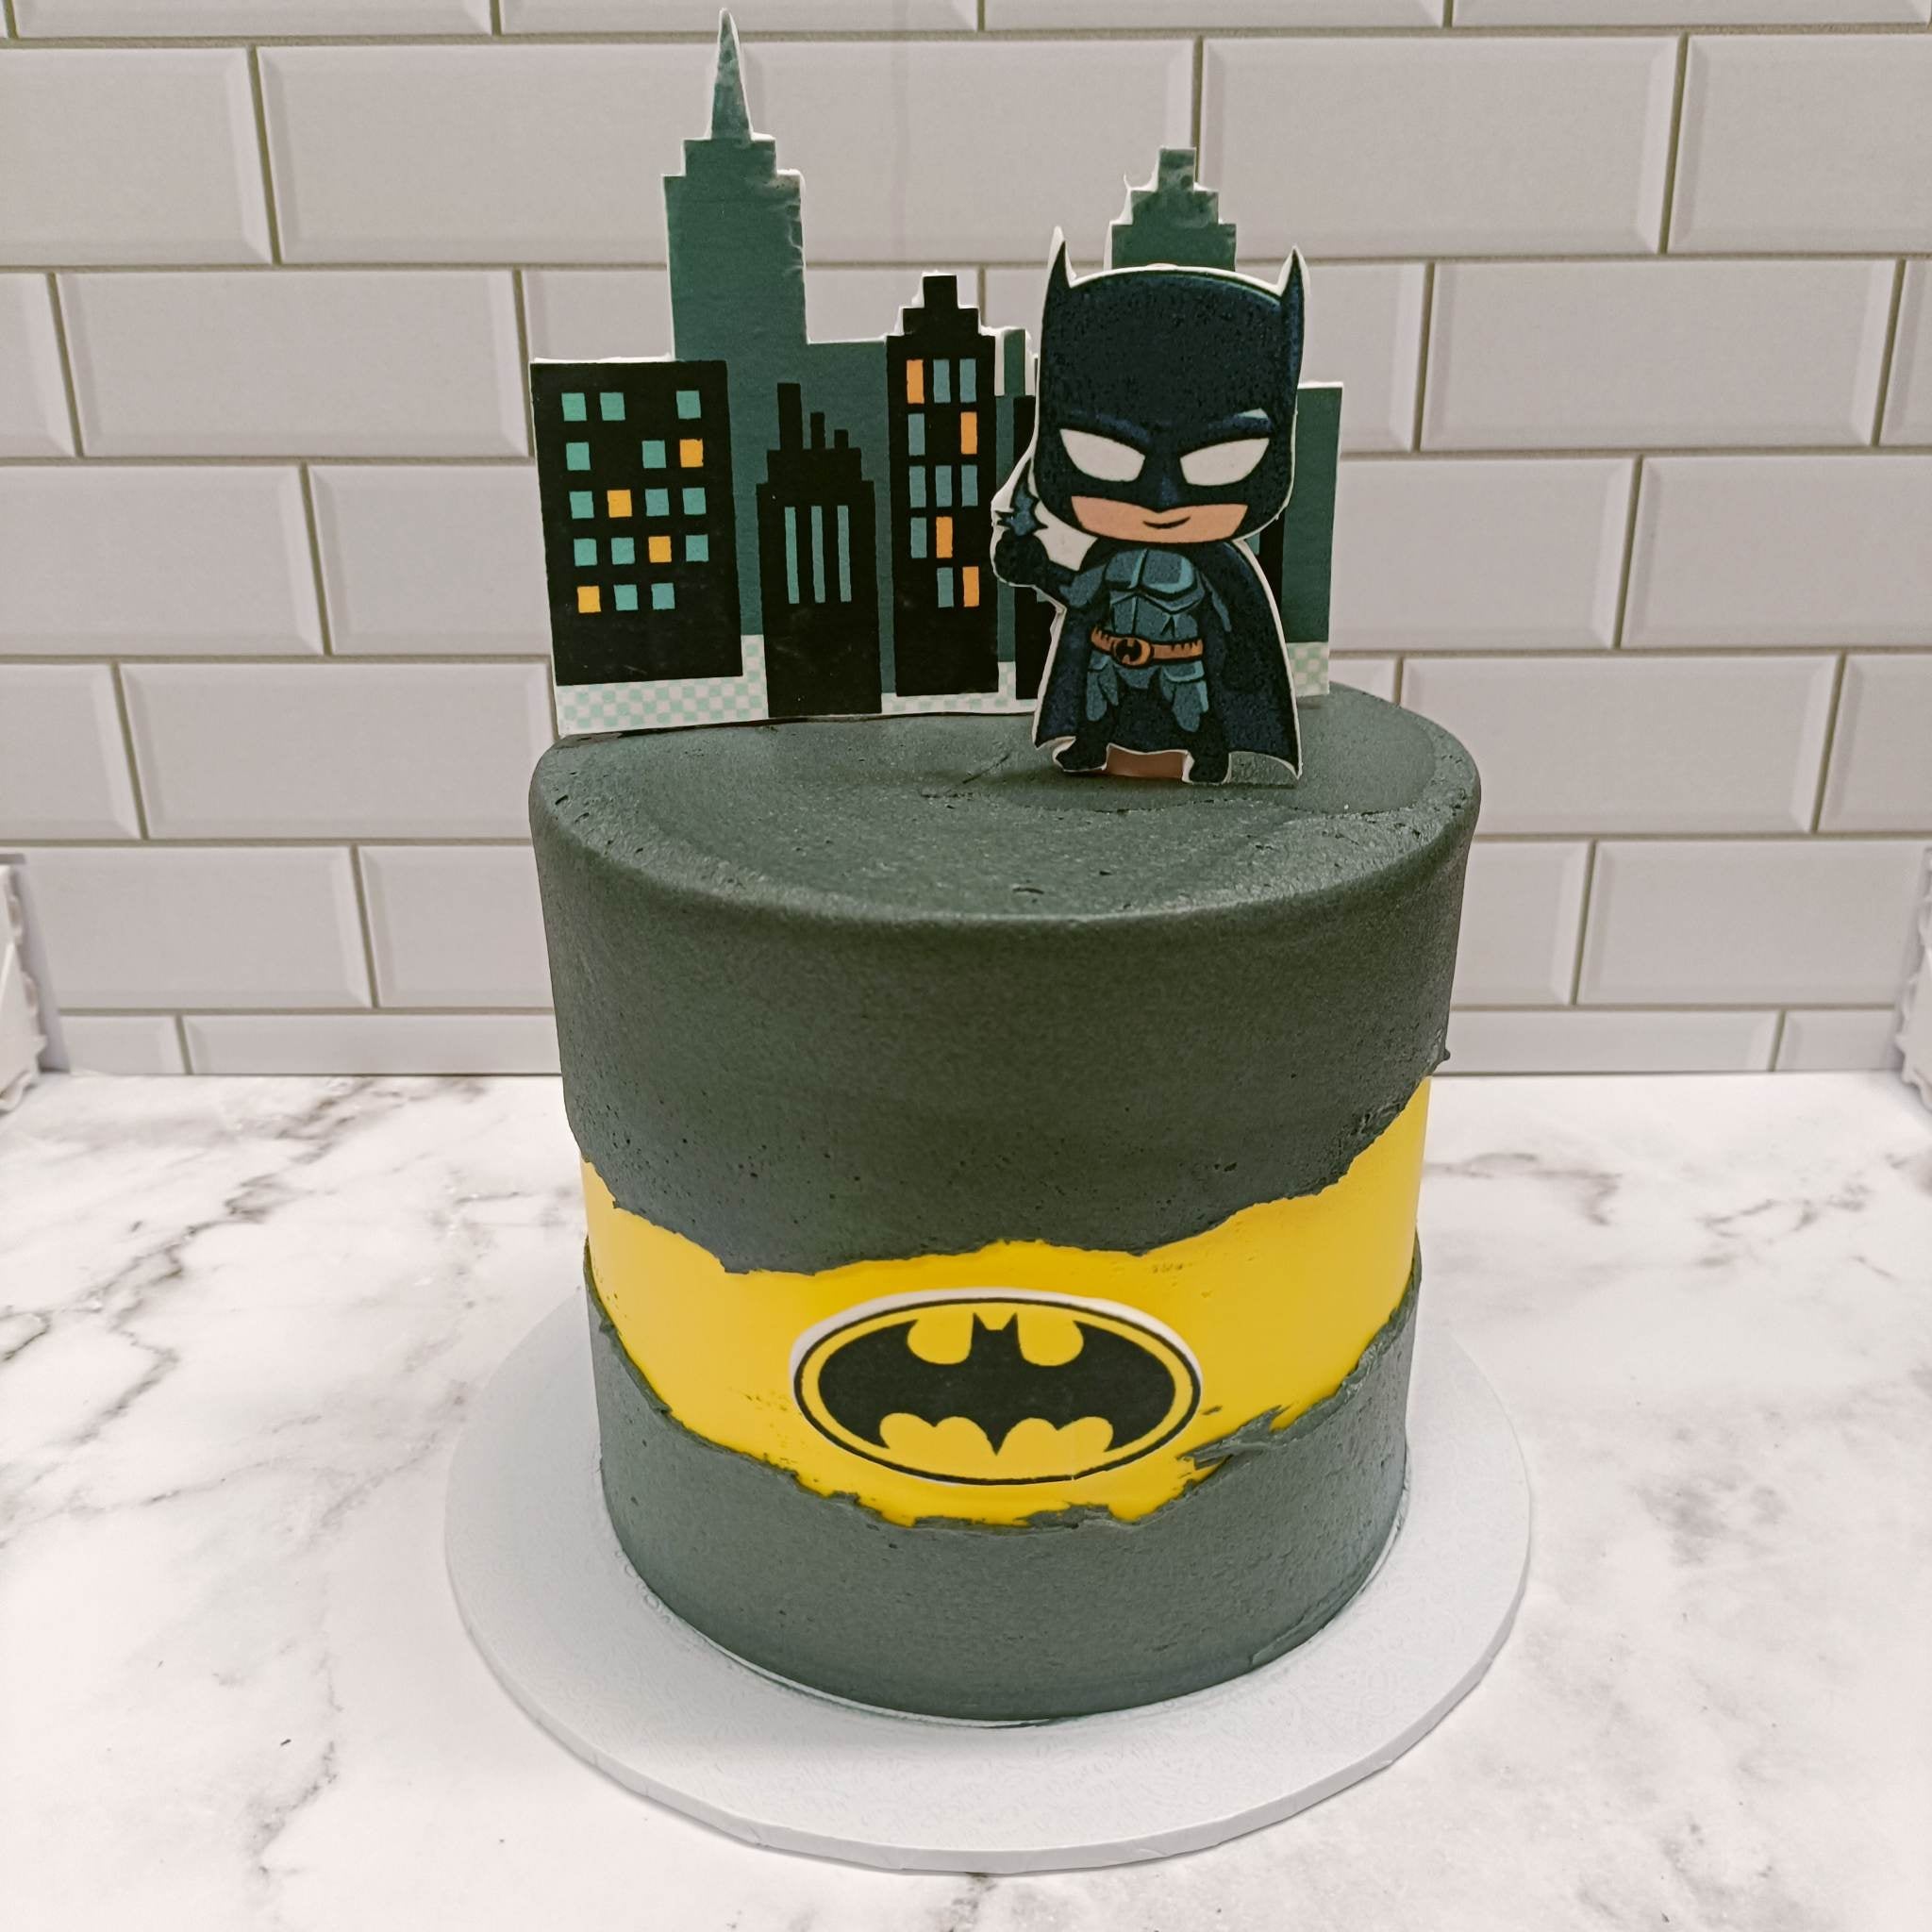 How to Make a Batman Cake